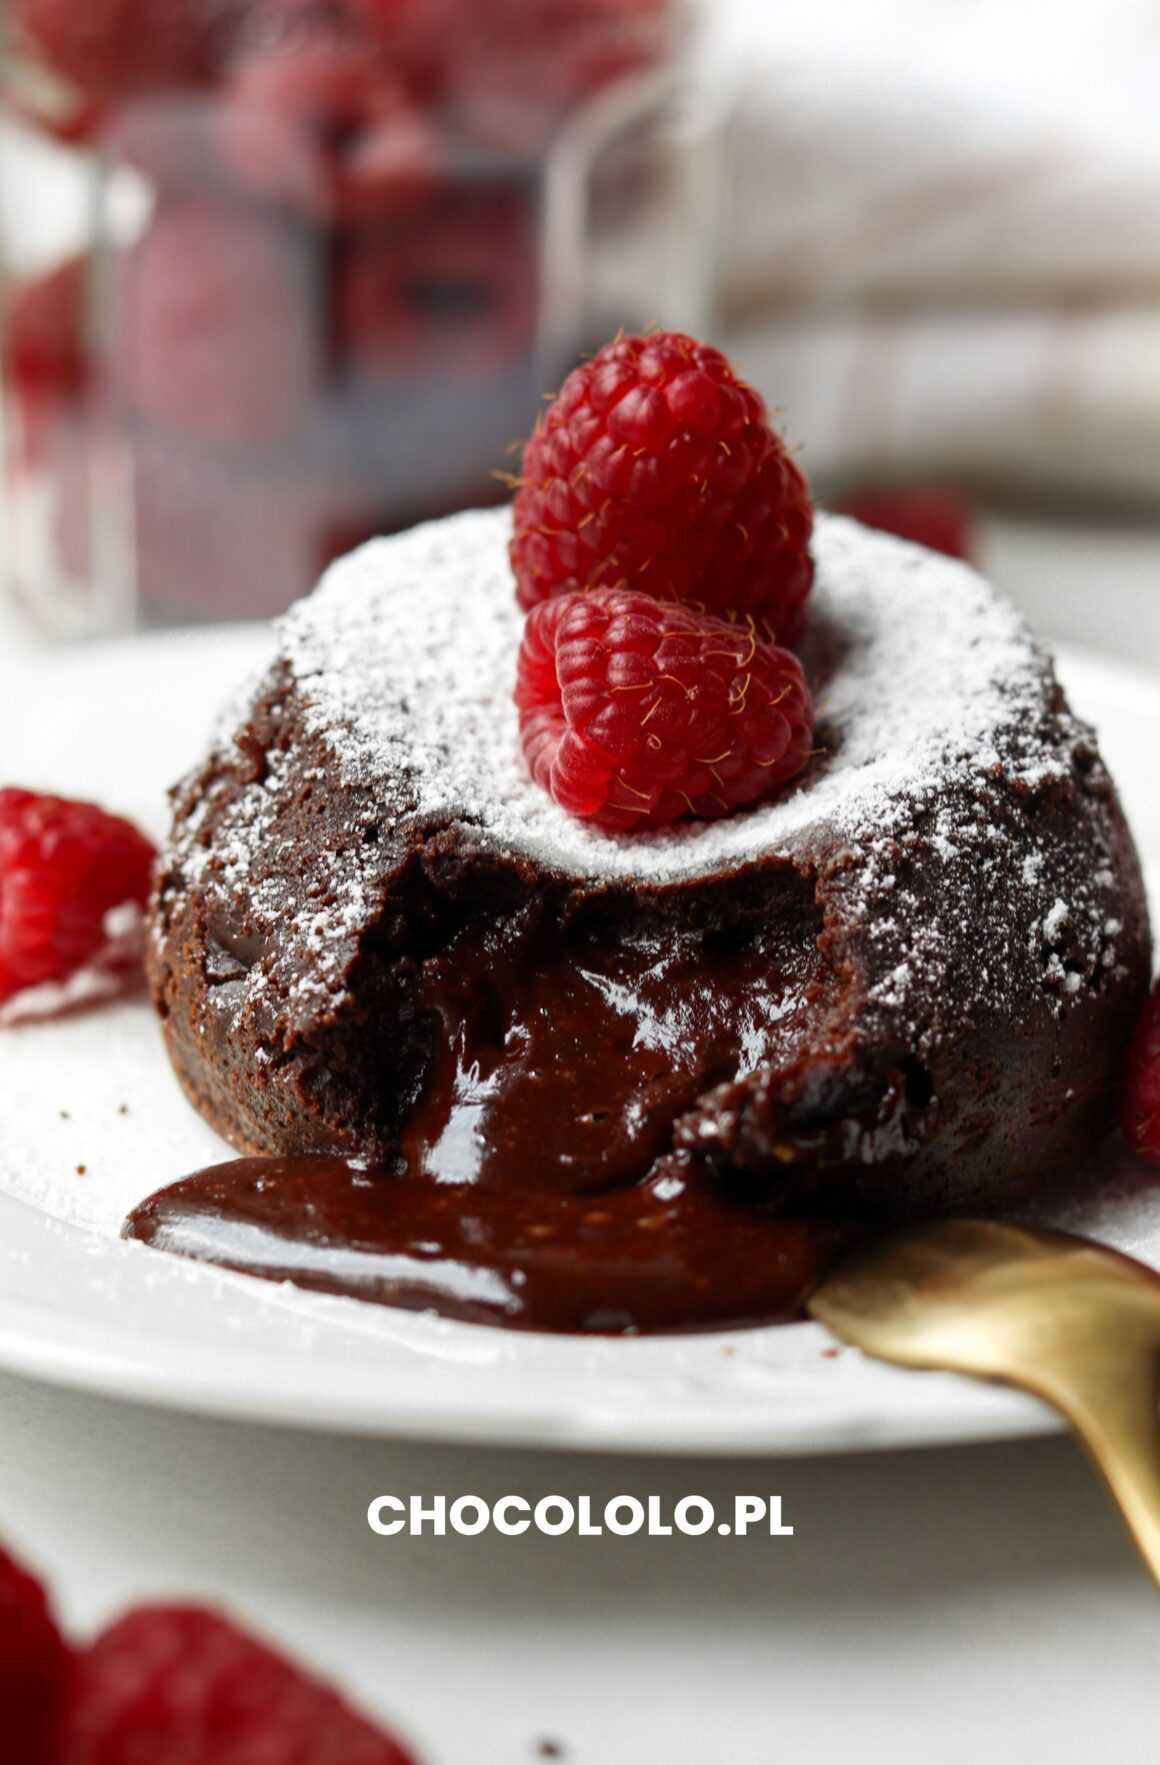 lava cake, czyli fondant czekoladowy